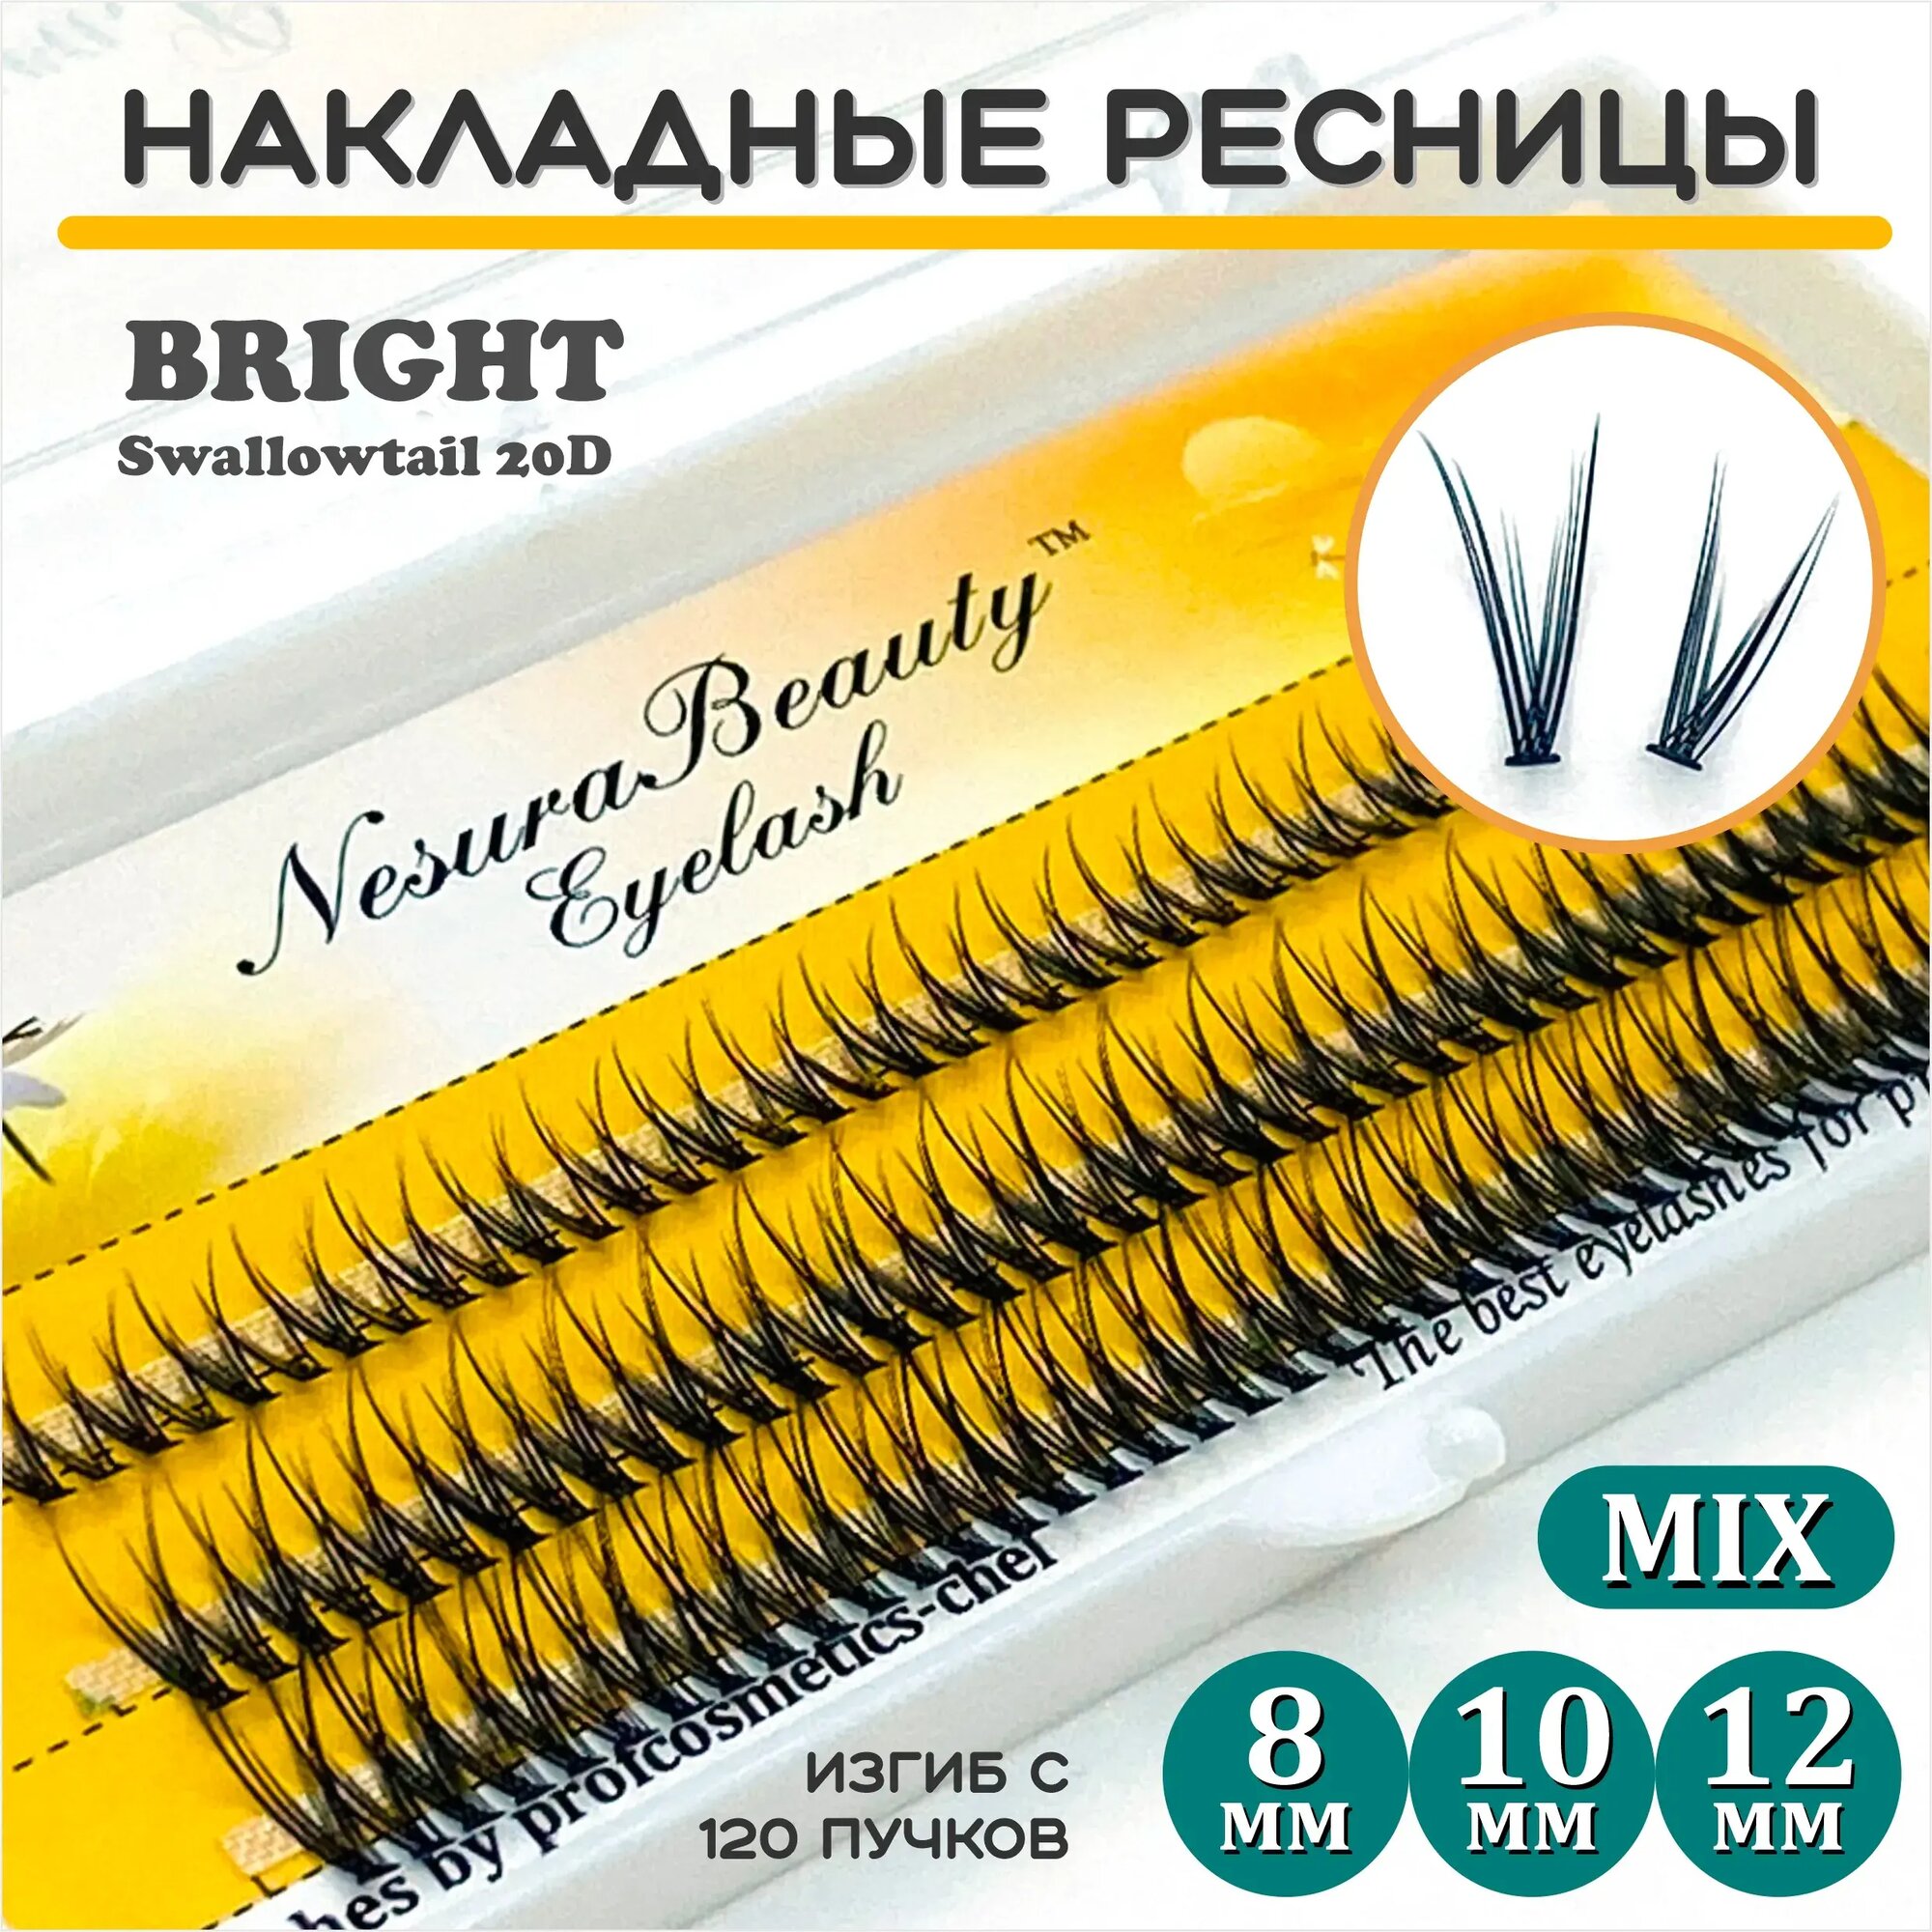 NesuraBeauty / Накладные ресницы пучки "Ласточкин хвост 20D" / Длина: MIX 8 10 12 мм, для макияжа и визажиста